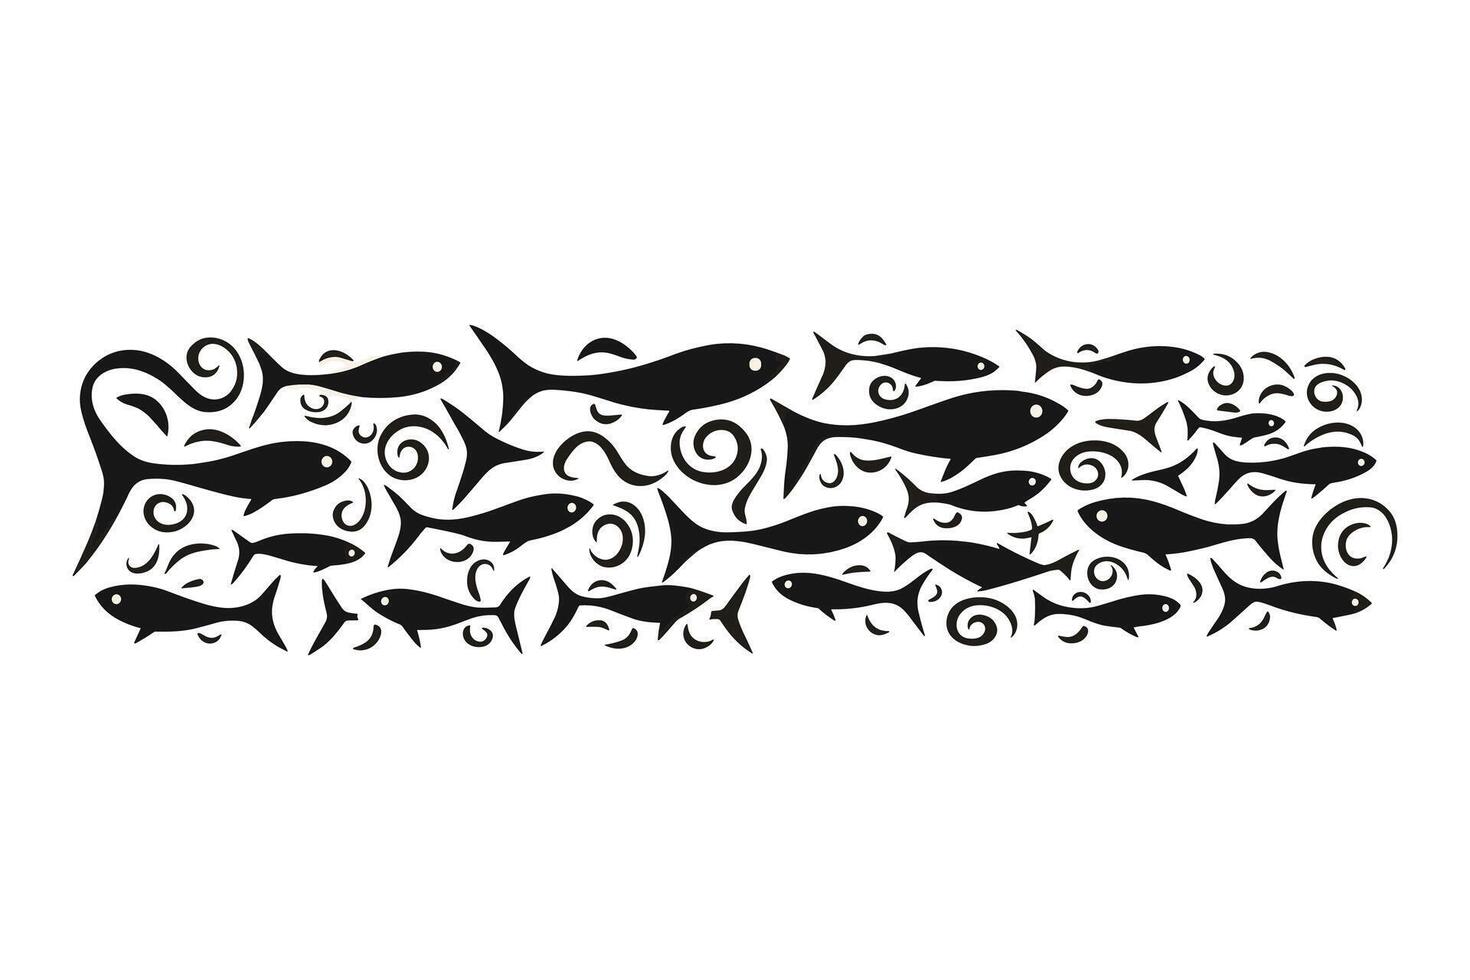 school- van vis, een groep van silhouet vis zwemmen en marinier leven illustratie, tatoeage, vissen. vector